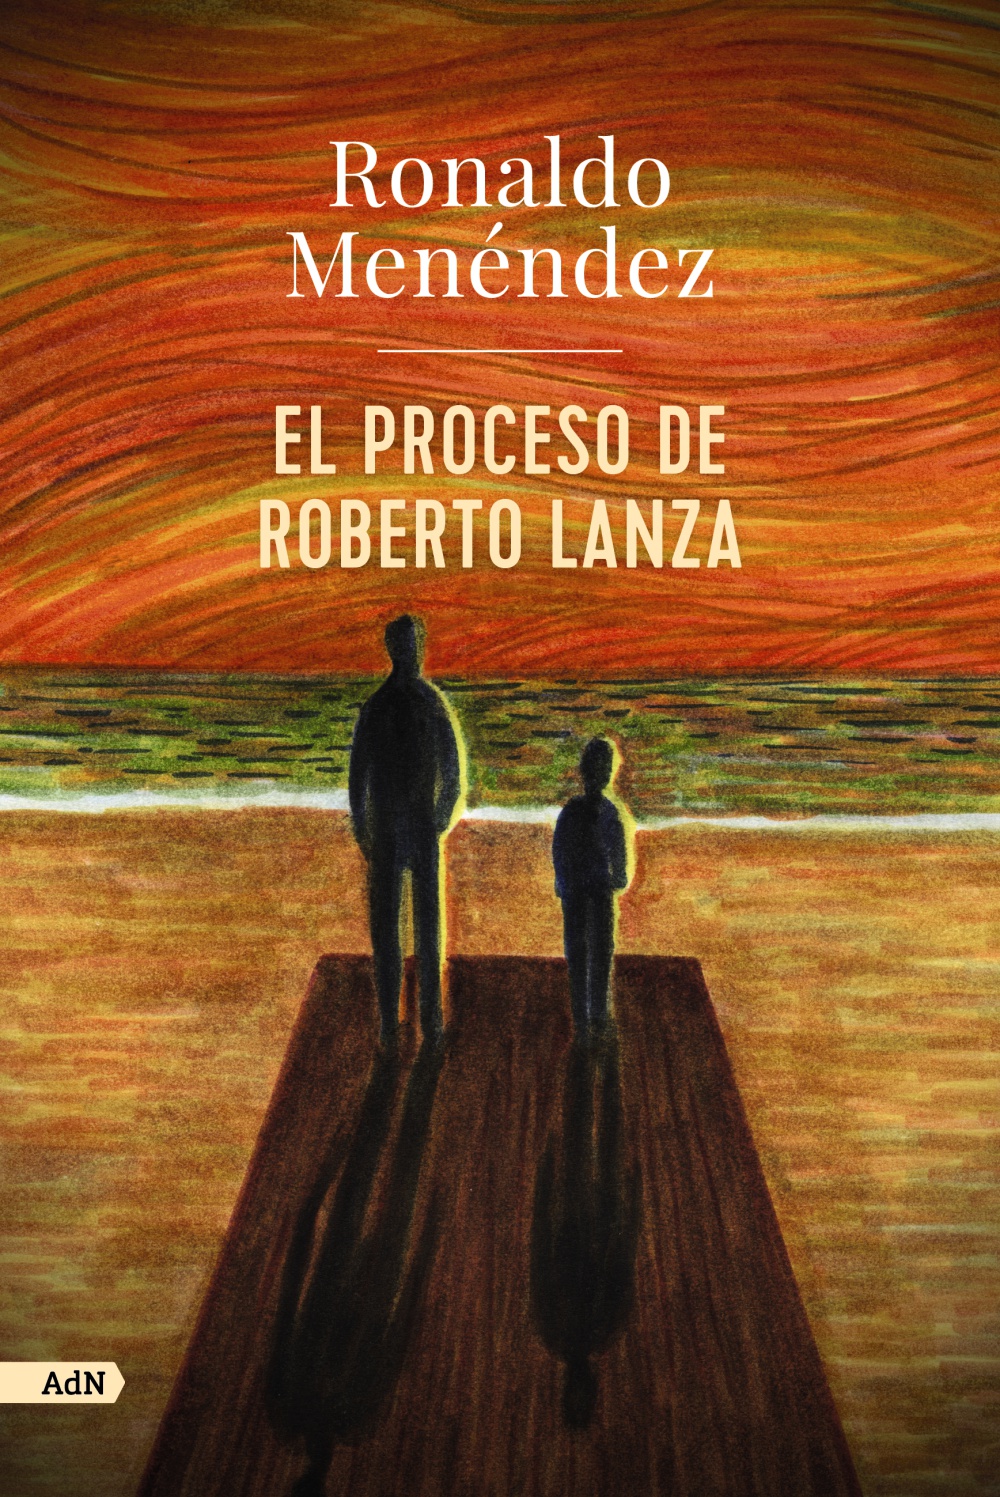 El proceso de Roberto Lanza